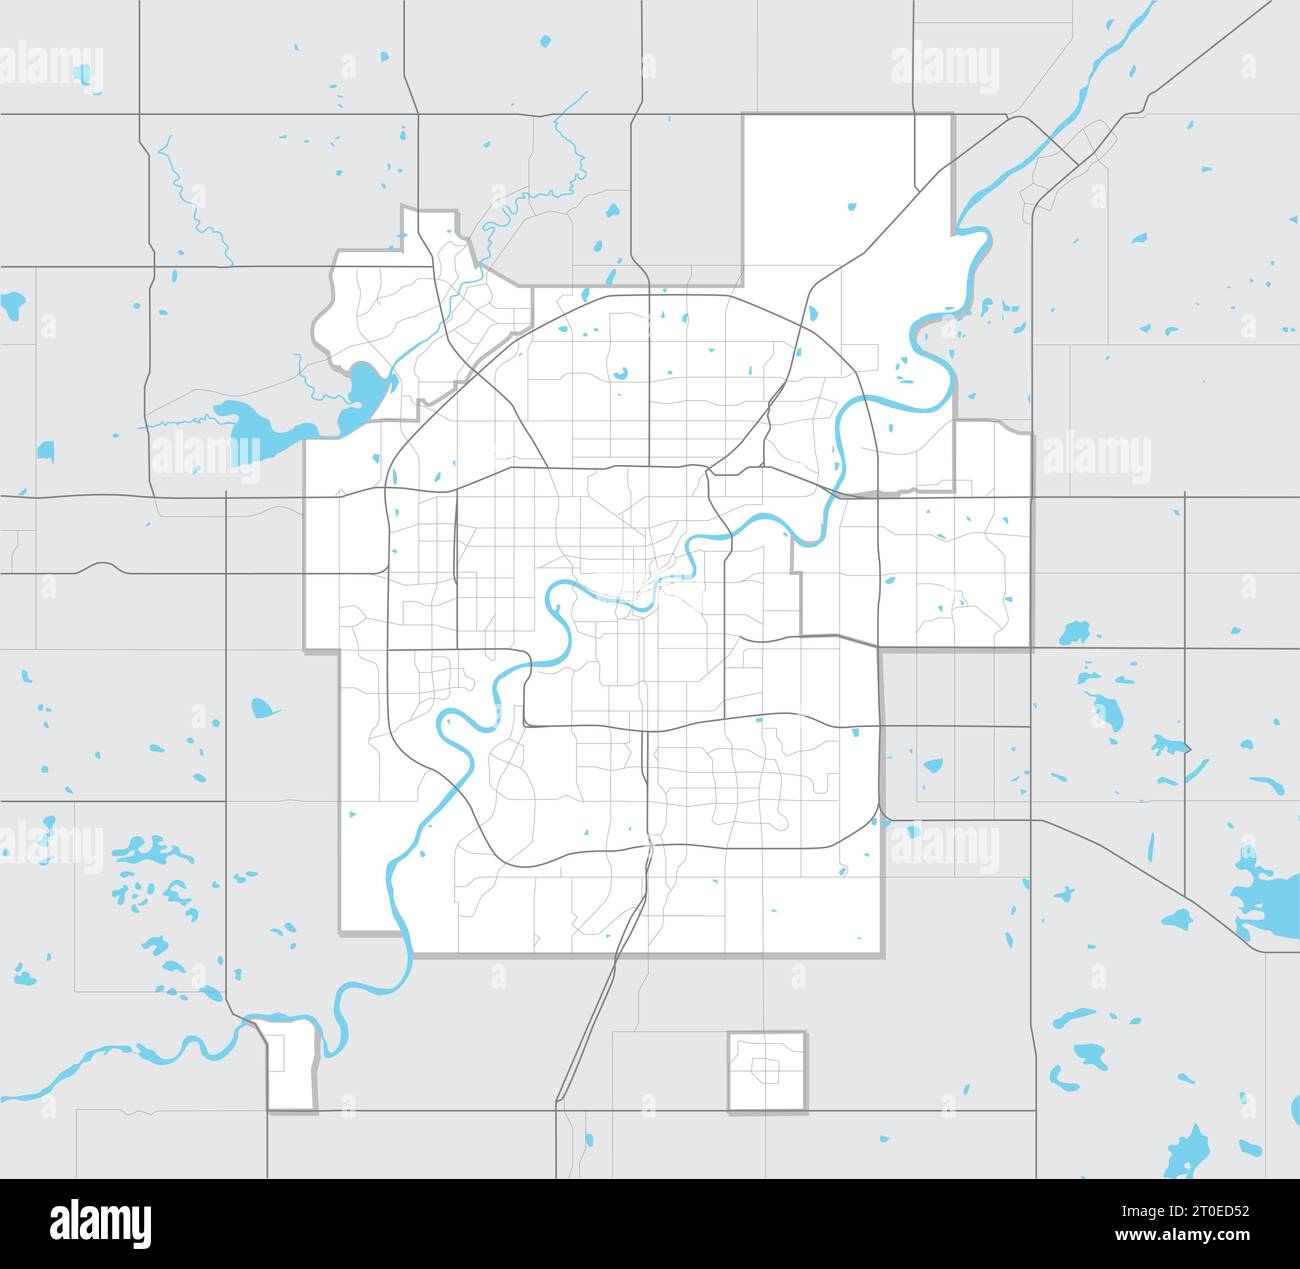 Einfache Karte von Edmonton Alberta, Kanada. Tourismuskarte der Metropolregion Edmonton mit Autobahnen, Straßen, Flüssen und Seen und regionalen Umrissen. Stock Vektor